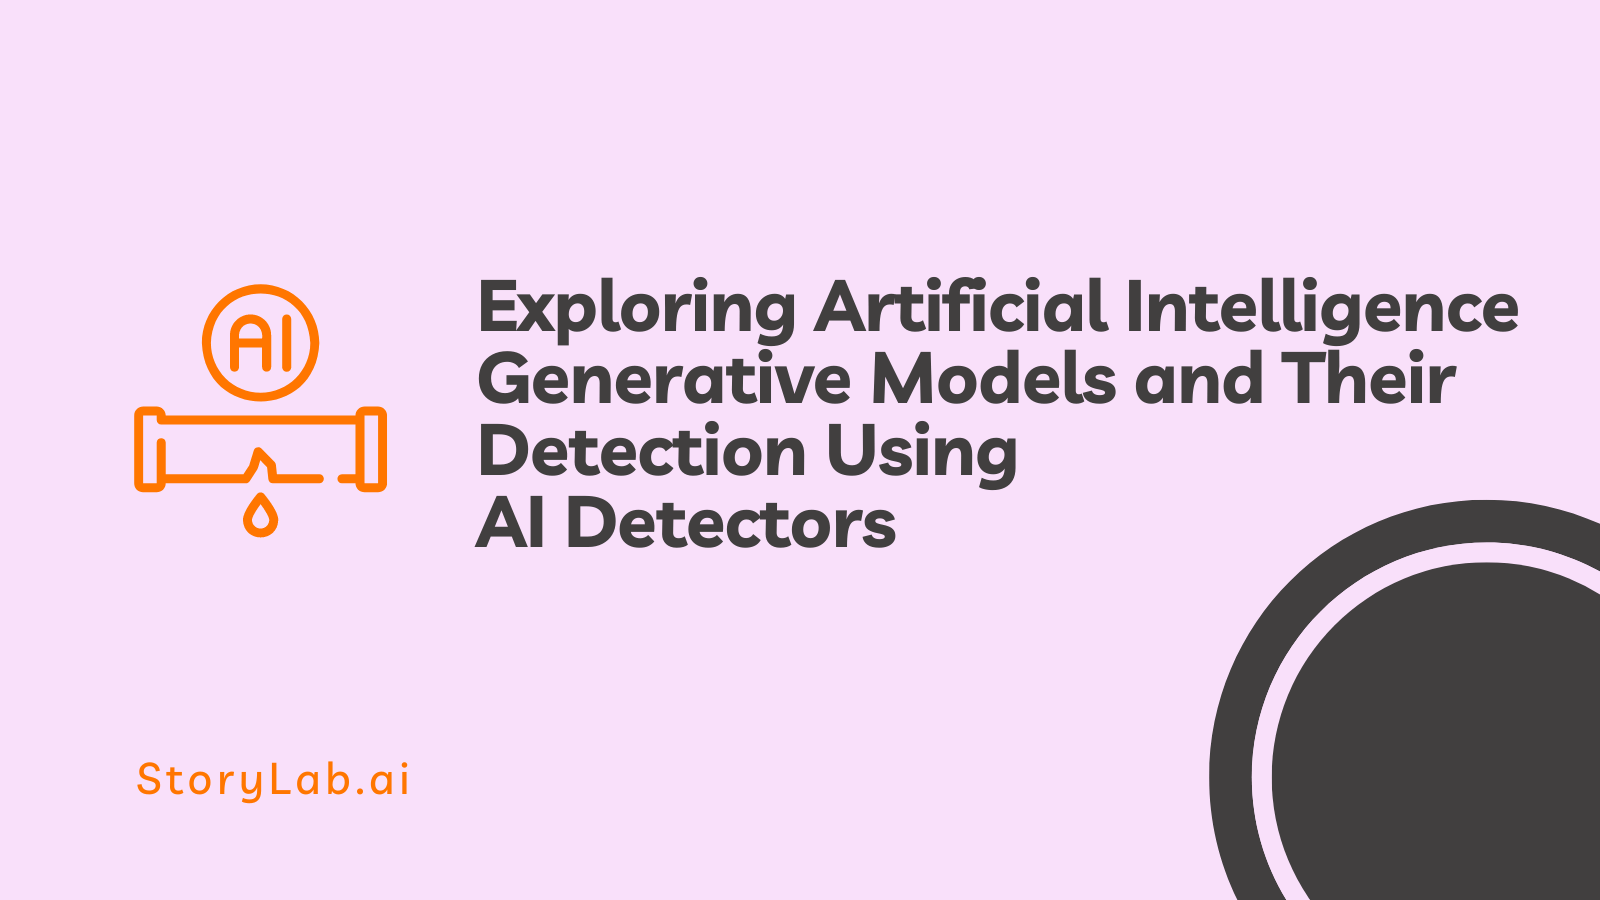 Onderzoek naar generatieve modellen voor kunstmatige intelligentie en hun detectie met behulp van AI-detectoren